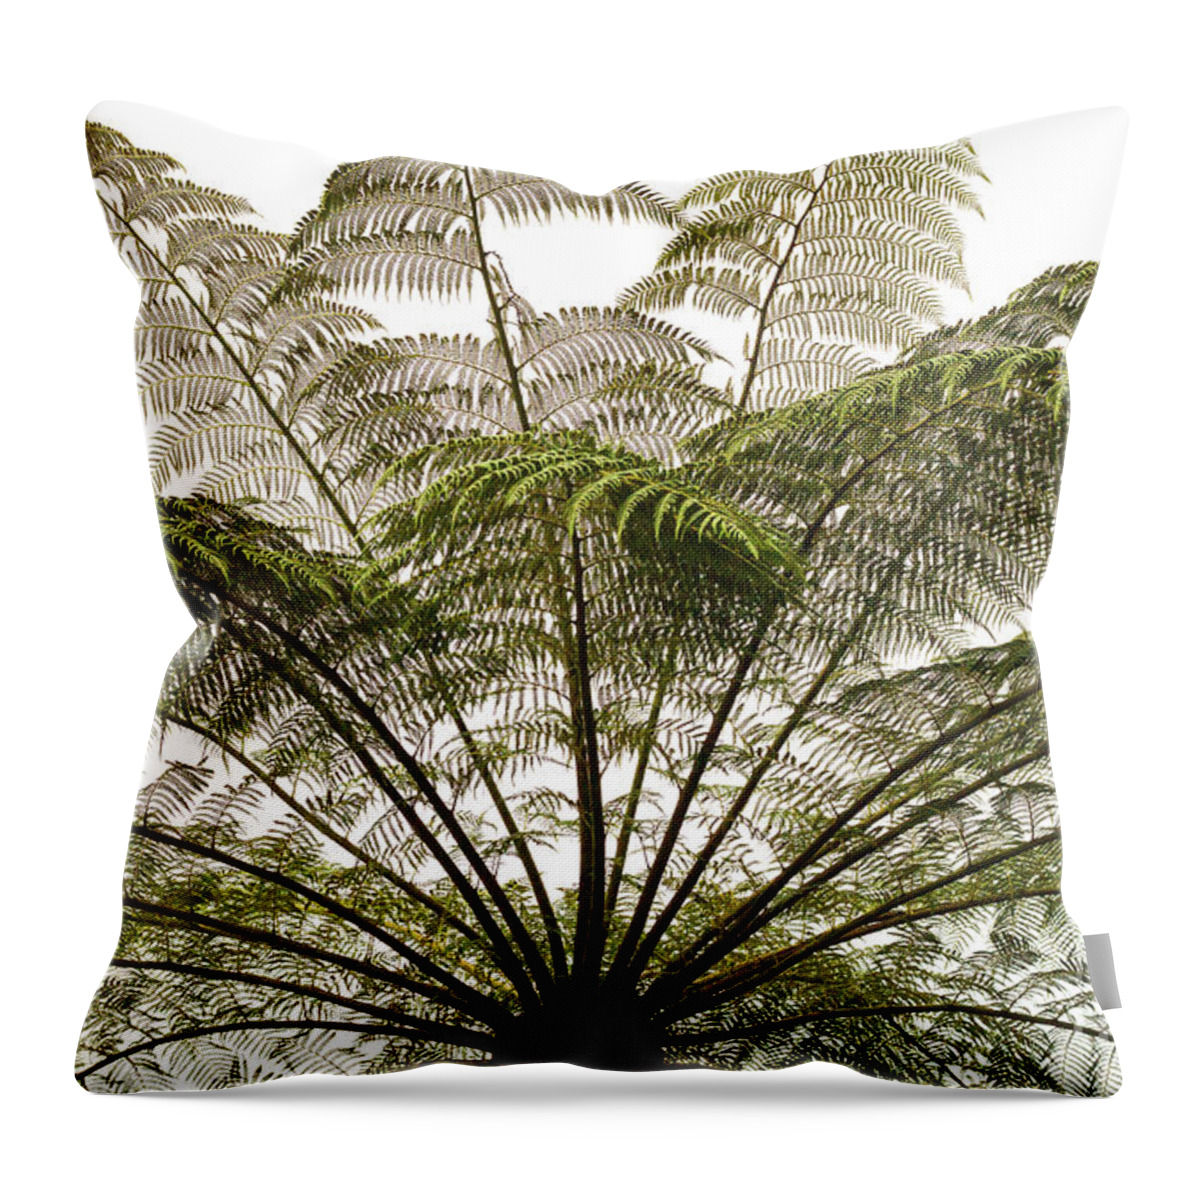 Tasmania Throw Pillow featuring the photograph Tasmanian Tree Fern Canopy by Elaine Teague